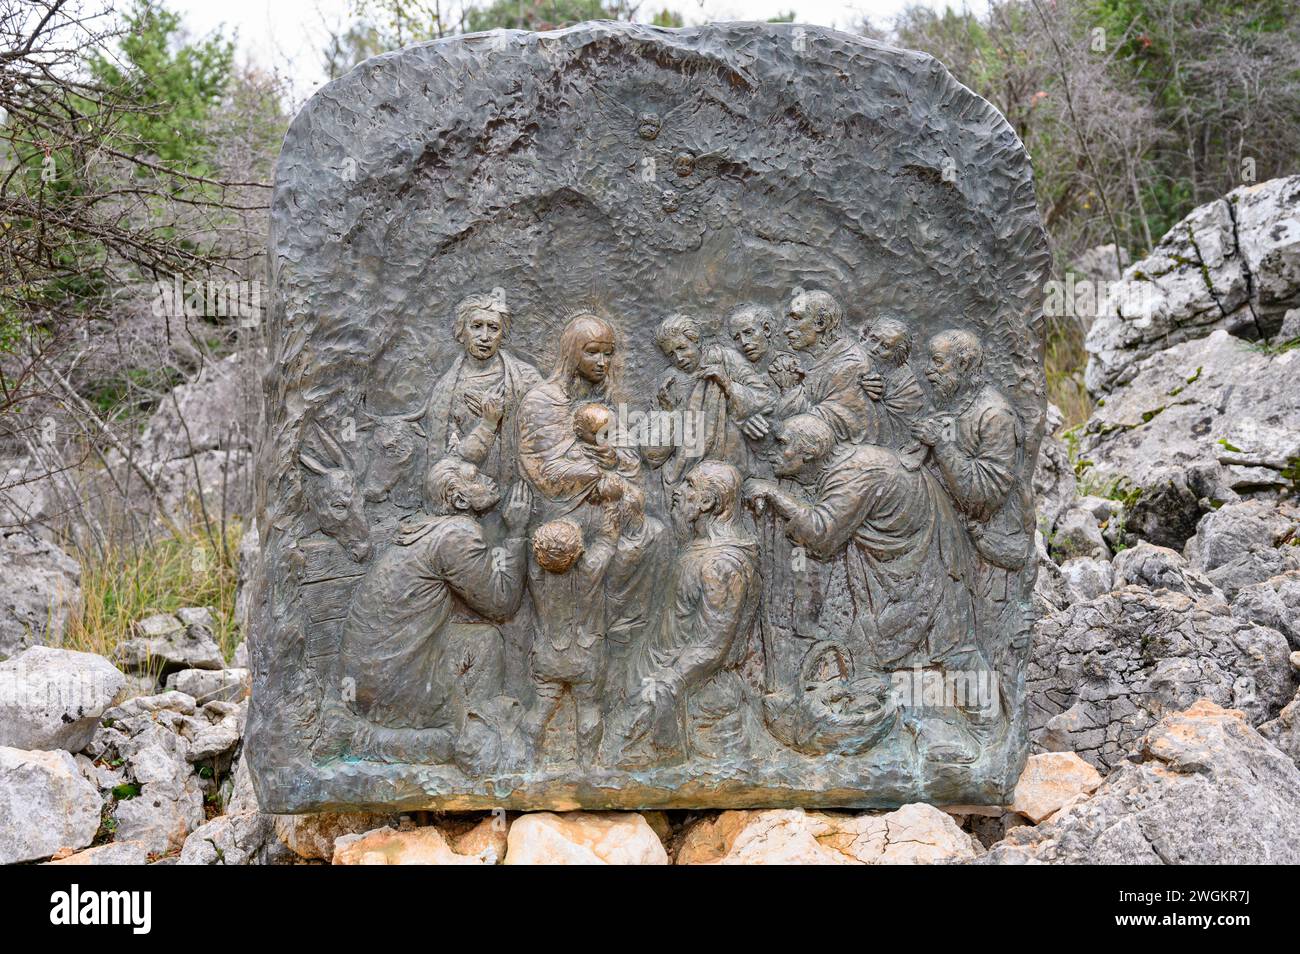 La Nativité de Jésus – troisième mystère joyeux du Rosaire. Sculpture en relief sur le mont Podbrdo (la colline des apparitions) à Medjugorje. Banque D'Images